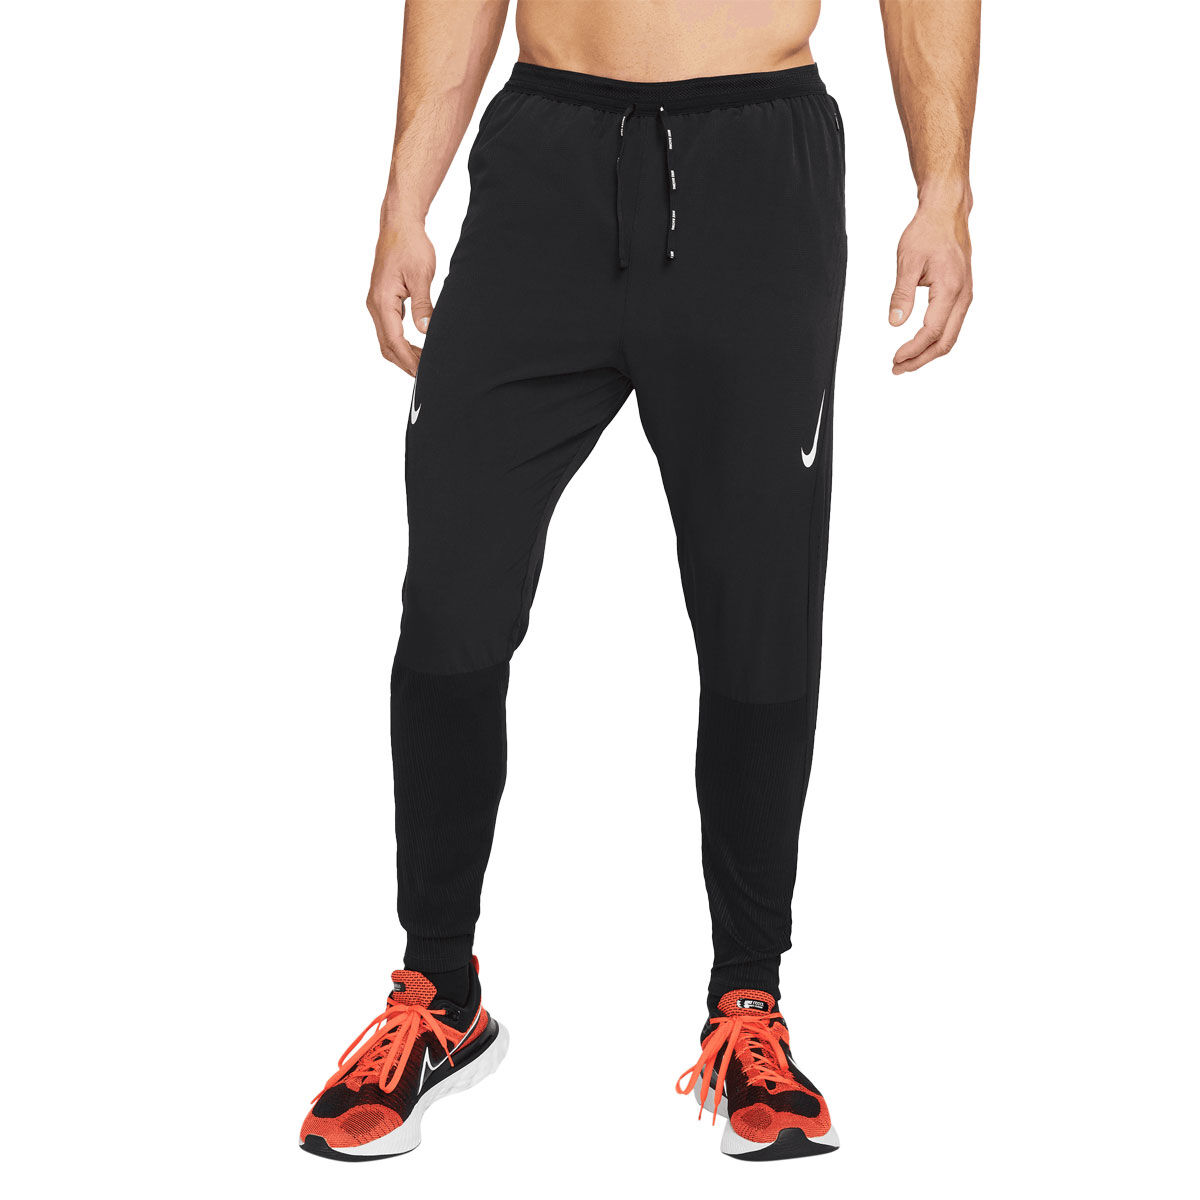 Buy Teal Track Pants for Men by ASICS Online  Ajiocom